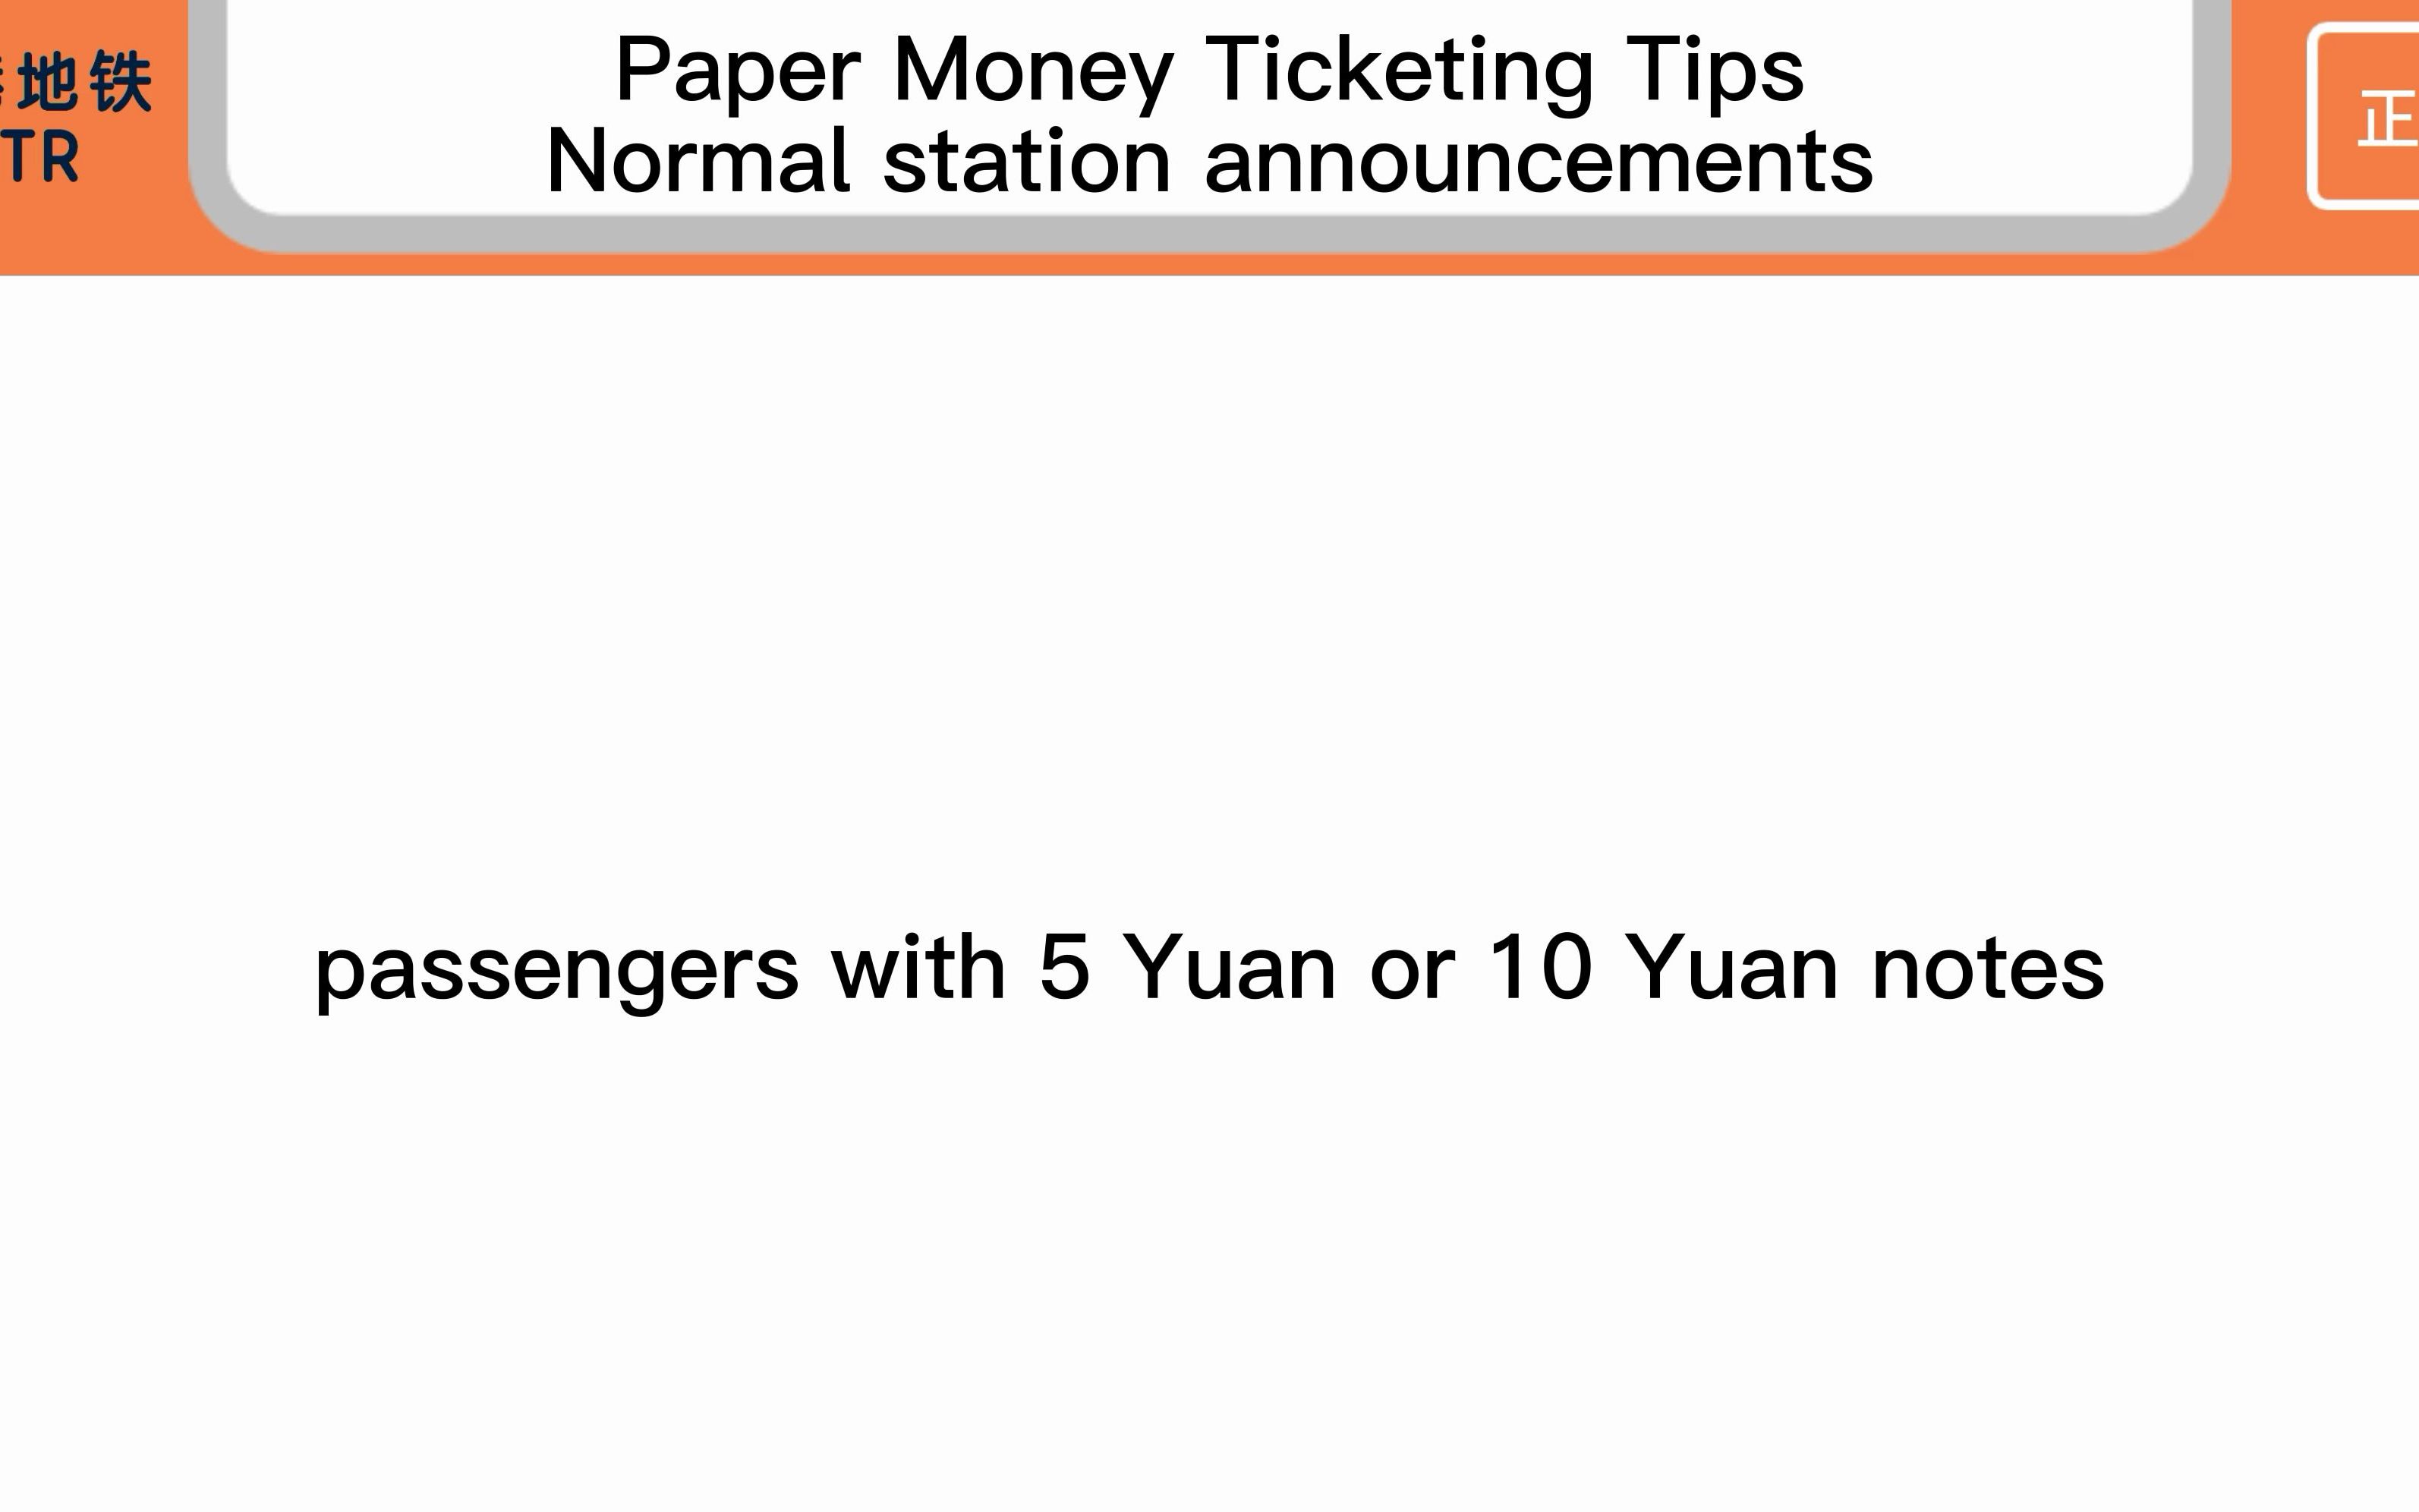 京港地铁 BJMTR 纸币购票提示 车站正常广播